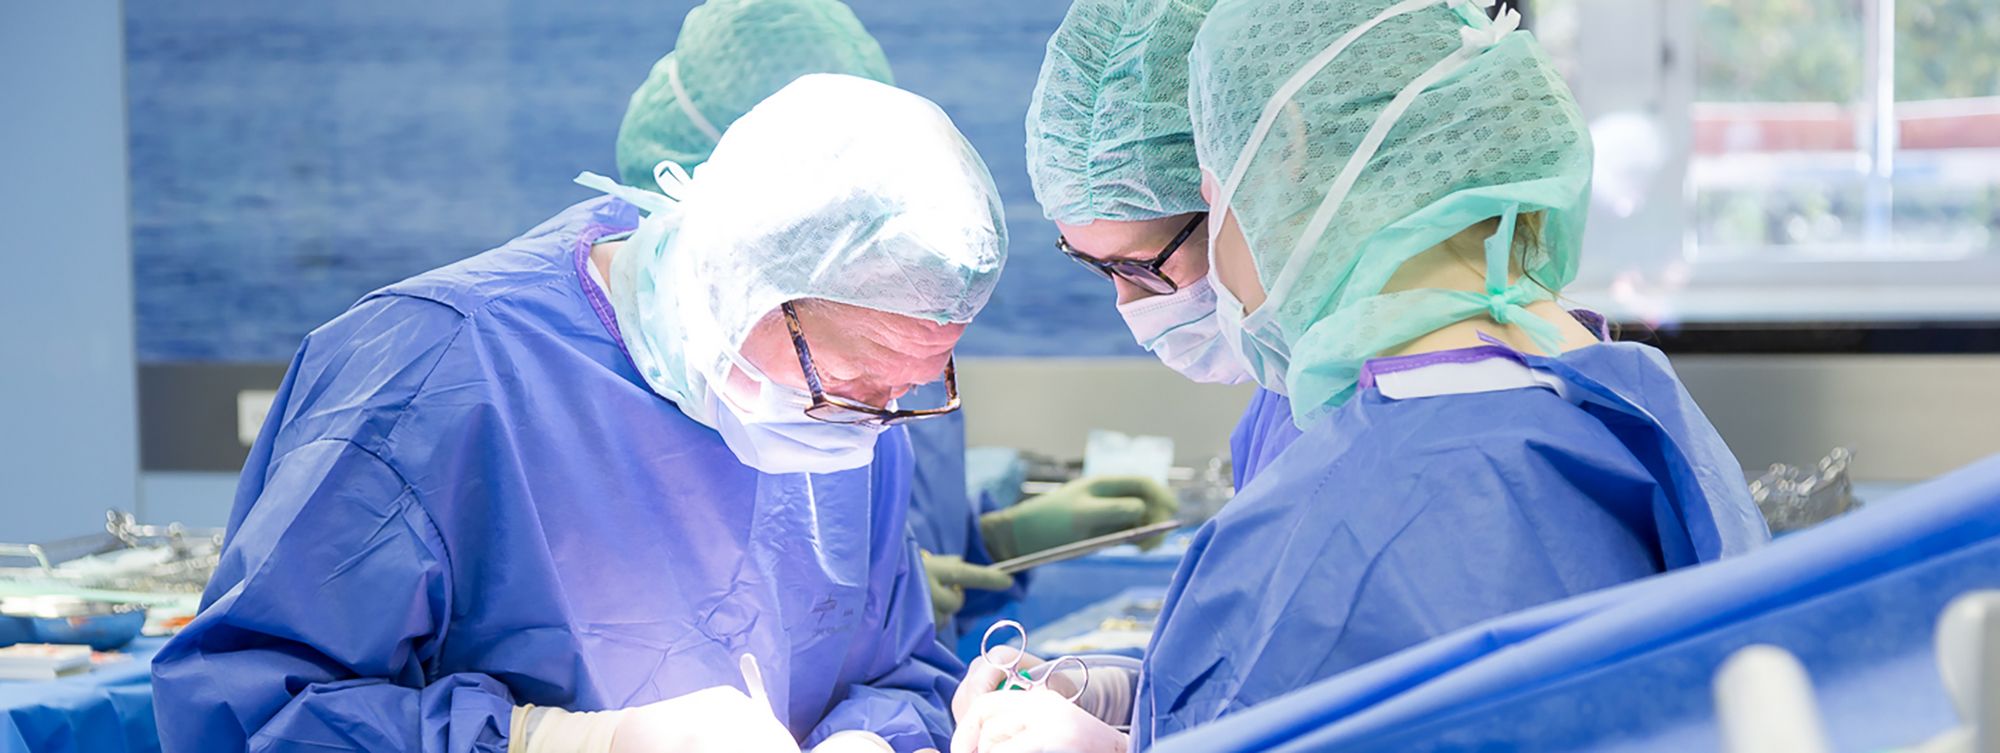 Arzt und Schwestern bei Operation